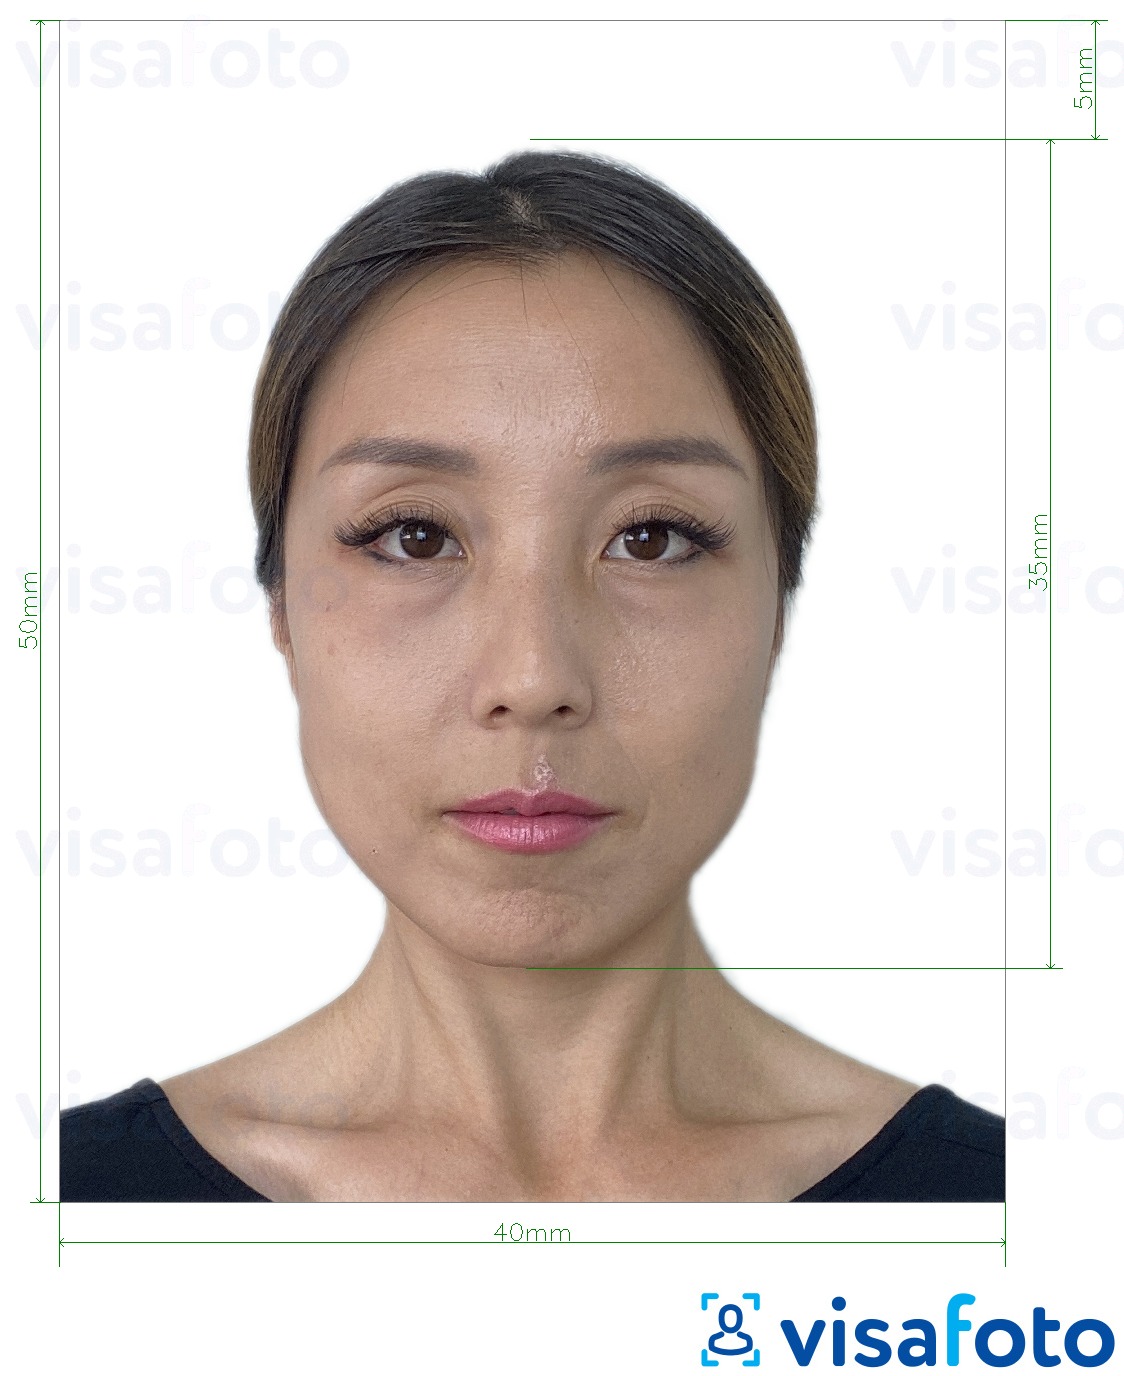 Przykład zdjęcia dla Hongkong Paszport 40x50 mm (4x5 cm) z podaniem dokładnego rozmiaru.